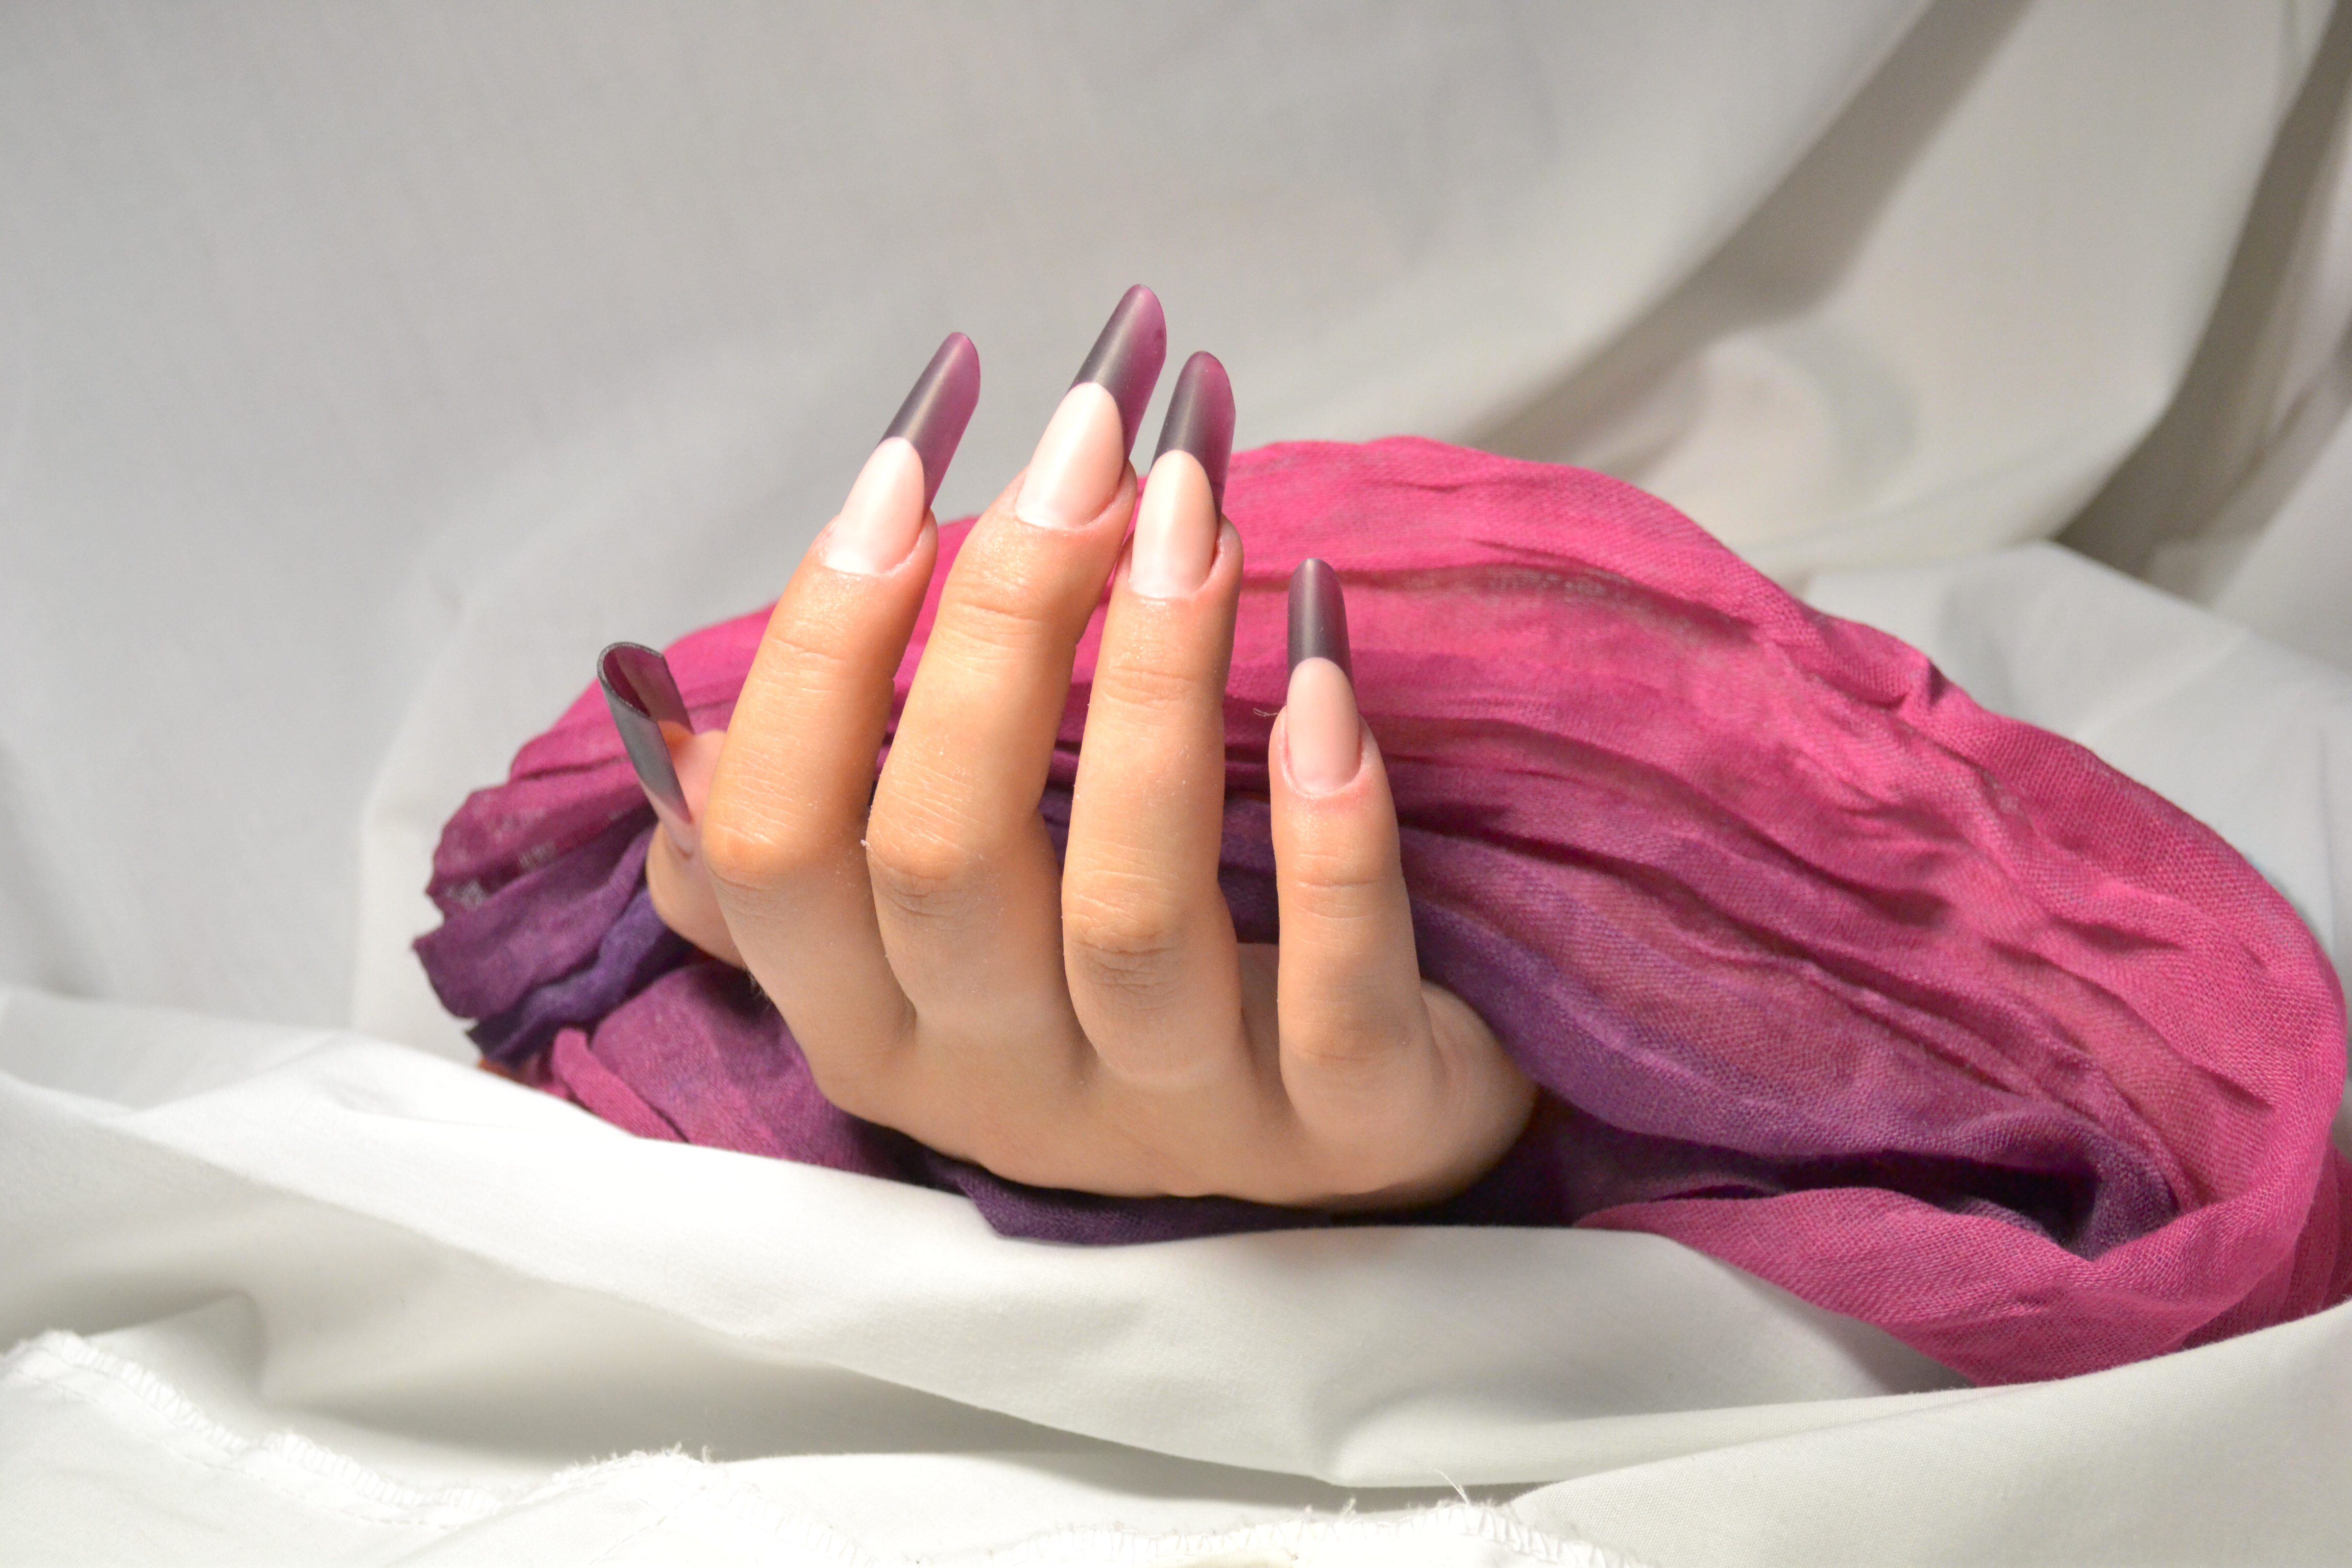 Акриловое моделирование ногтей и дизайн цветными акриловыми пудрами